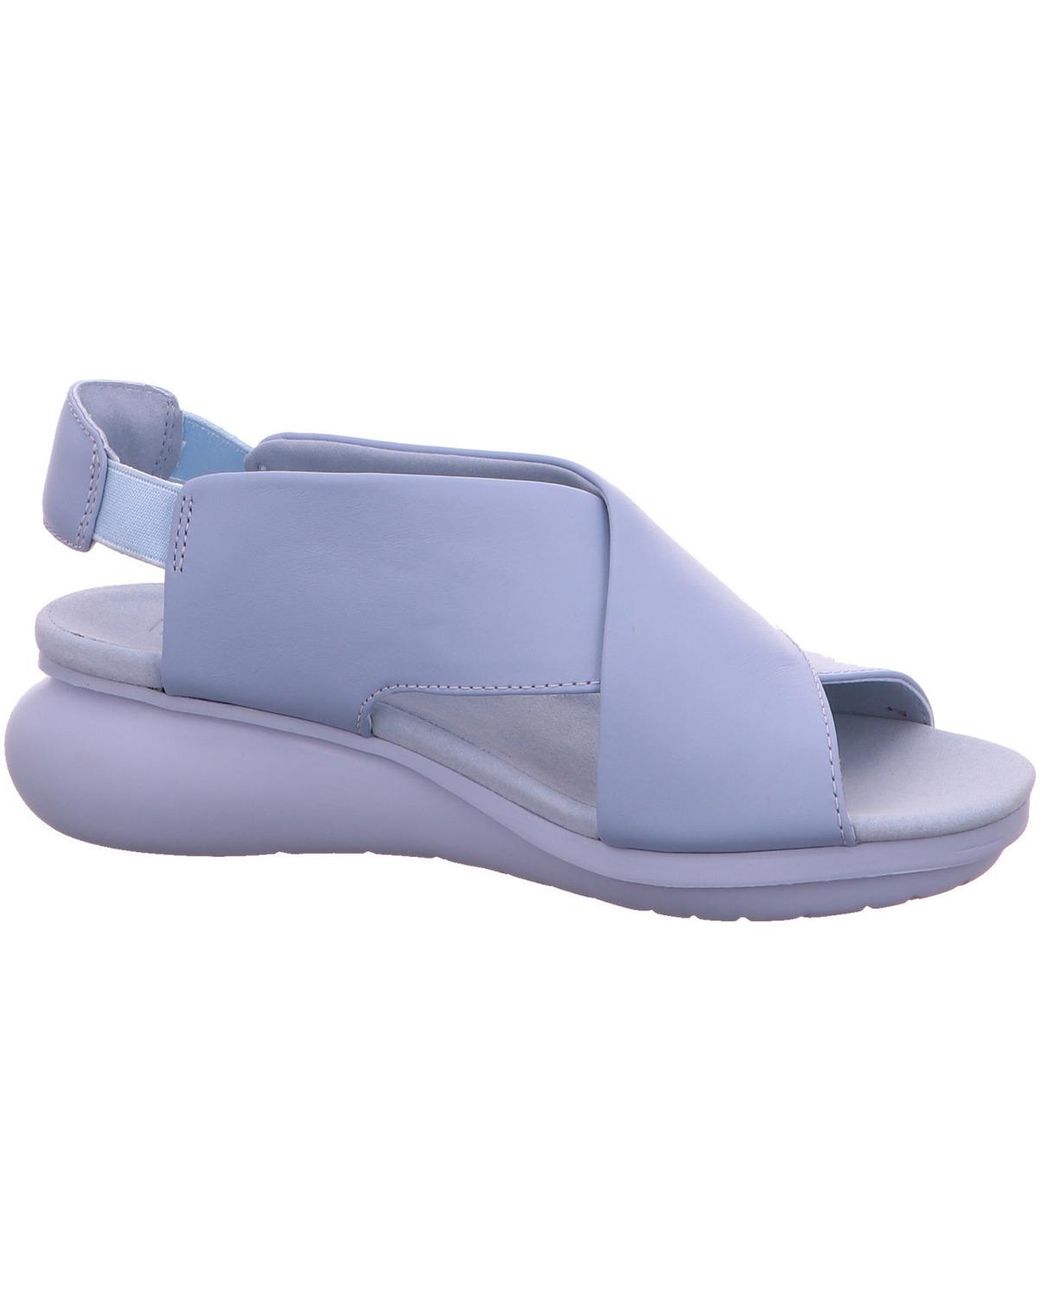 Dames Schoenen voor voor Platte schoenen voor Platte sandalen Camper Katoen Atonik Sandalen Met Gingham Ruit in het Blauw 